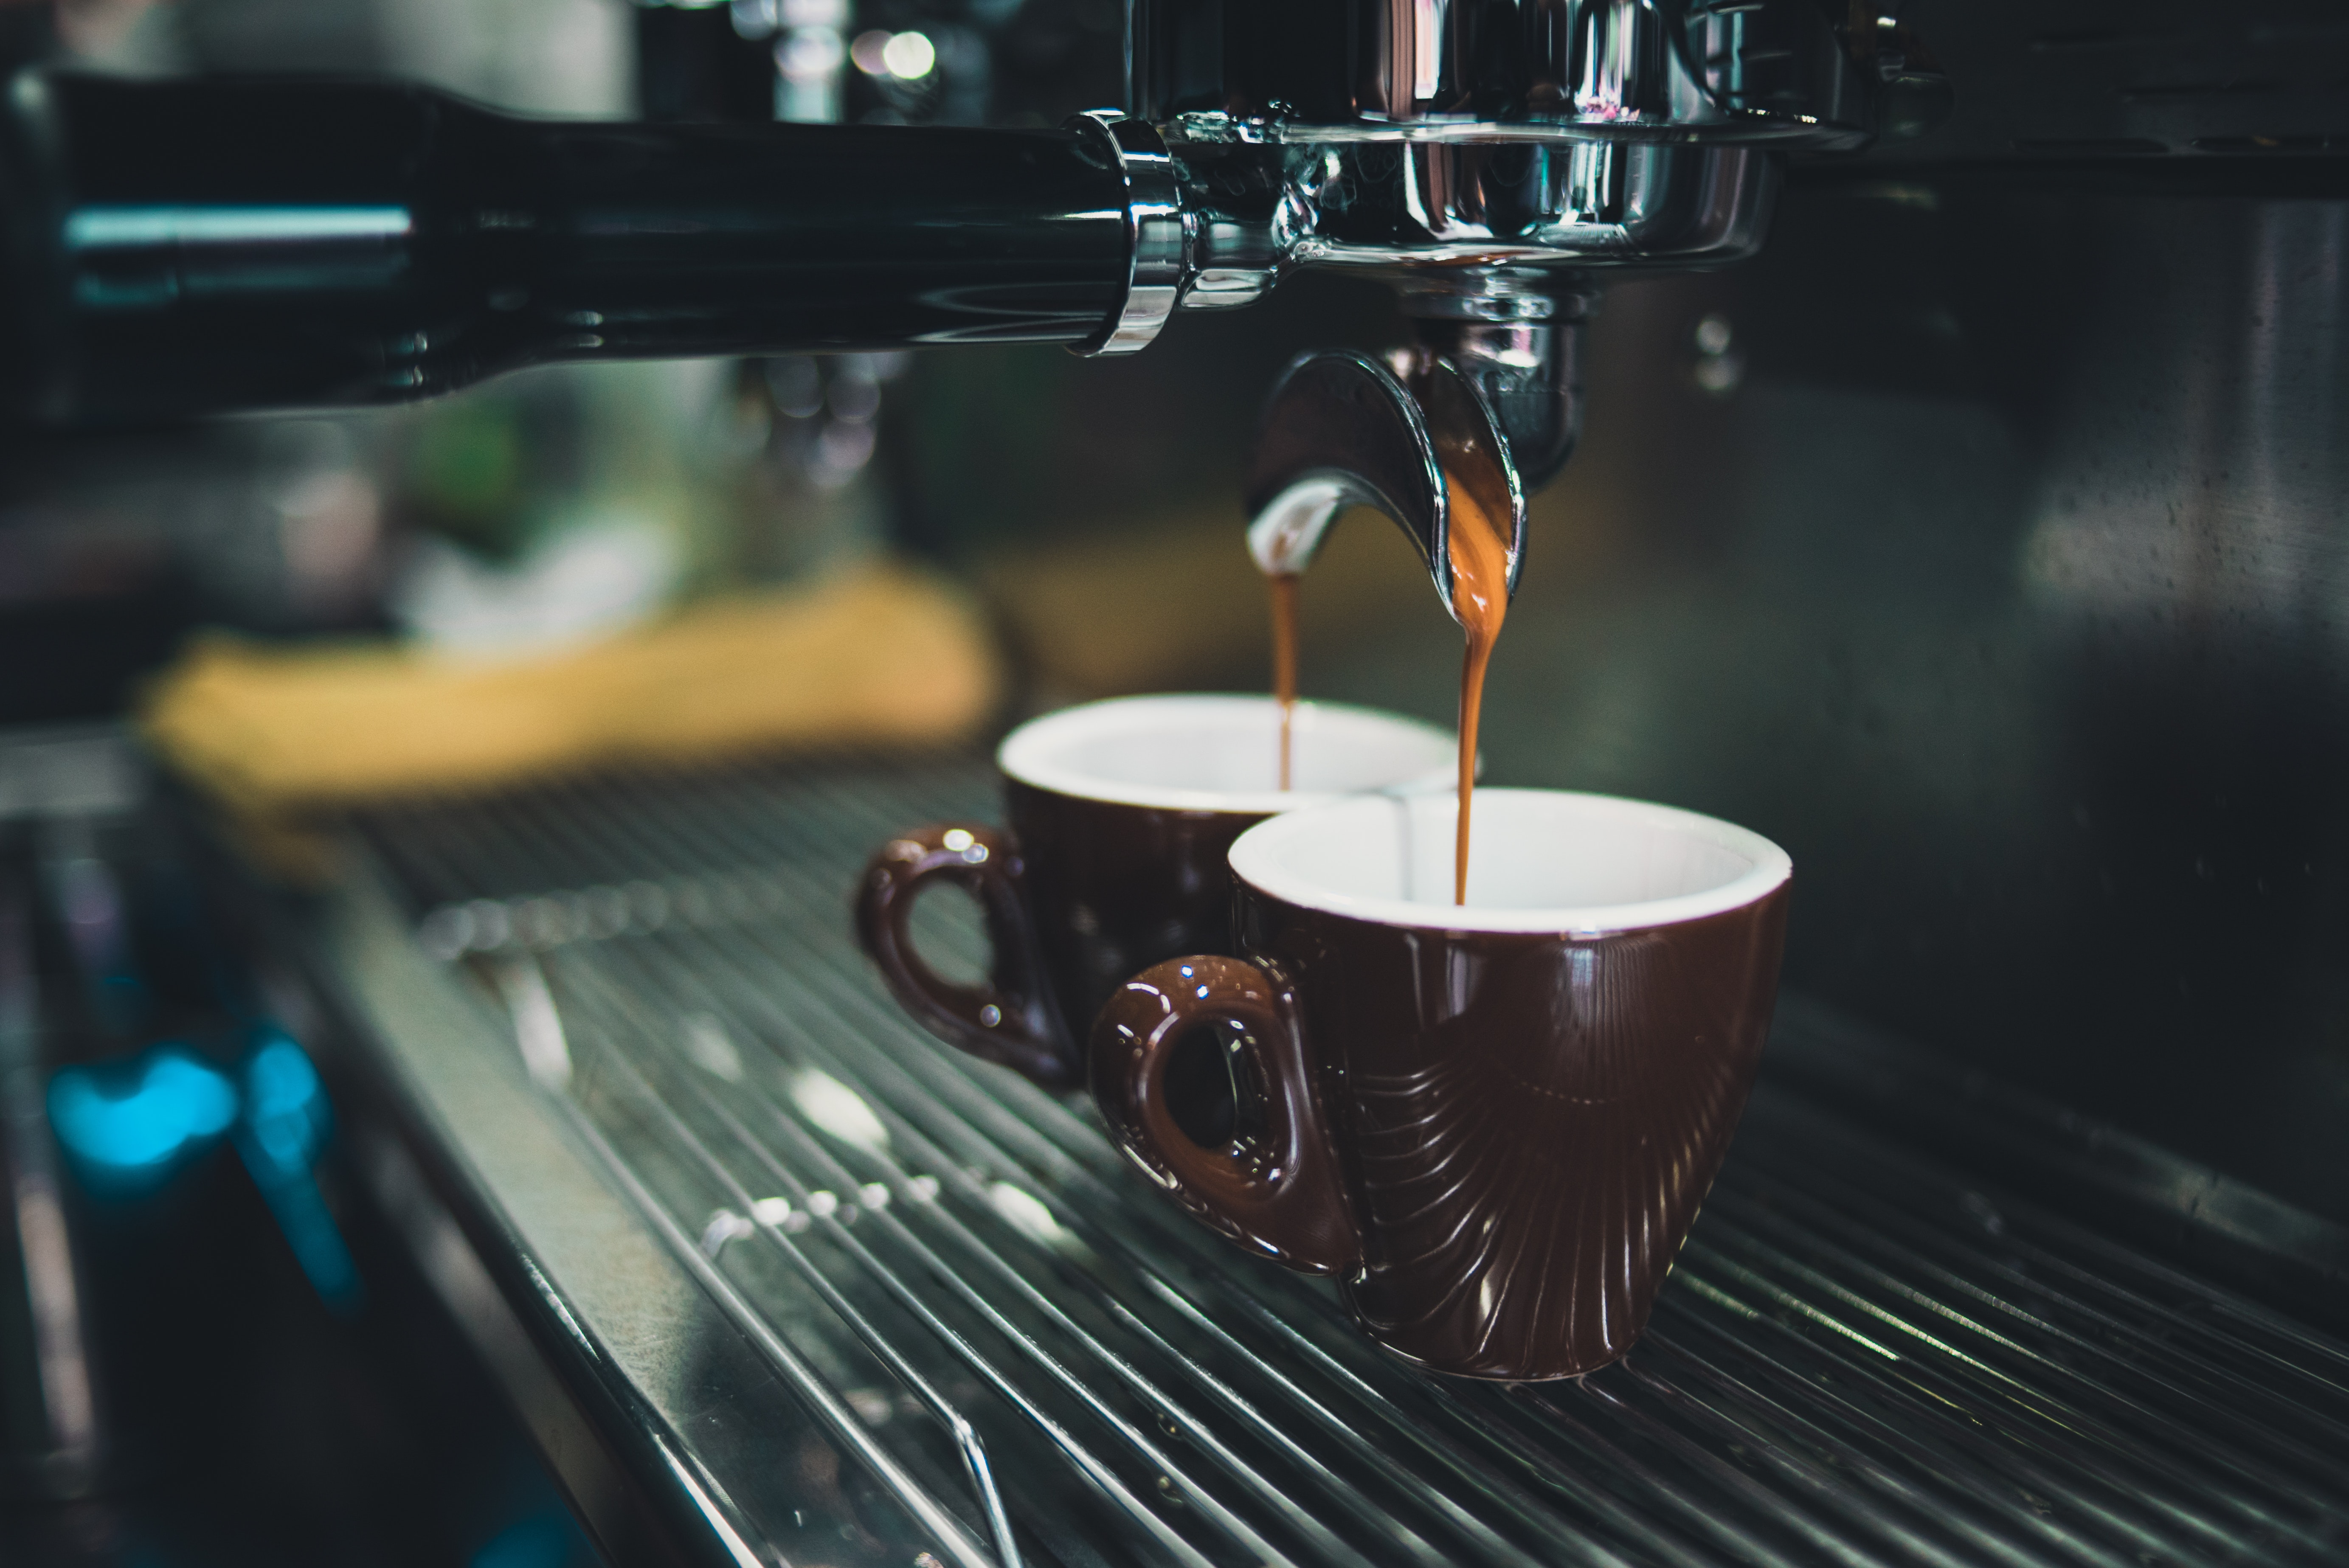 Quelle est la température idéale pour un espresso (et le café en